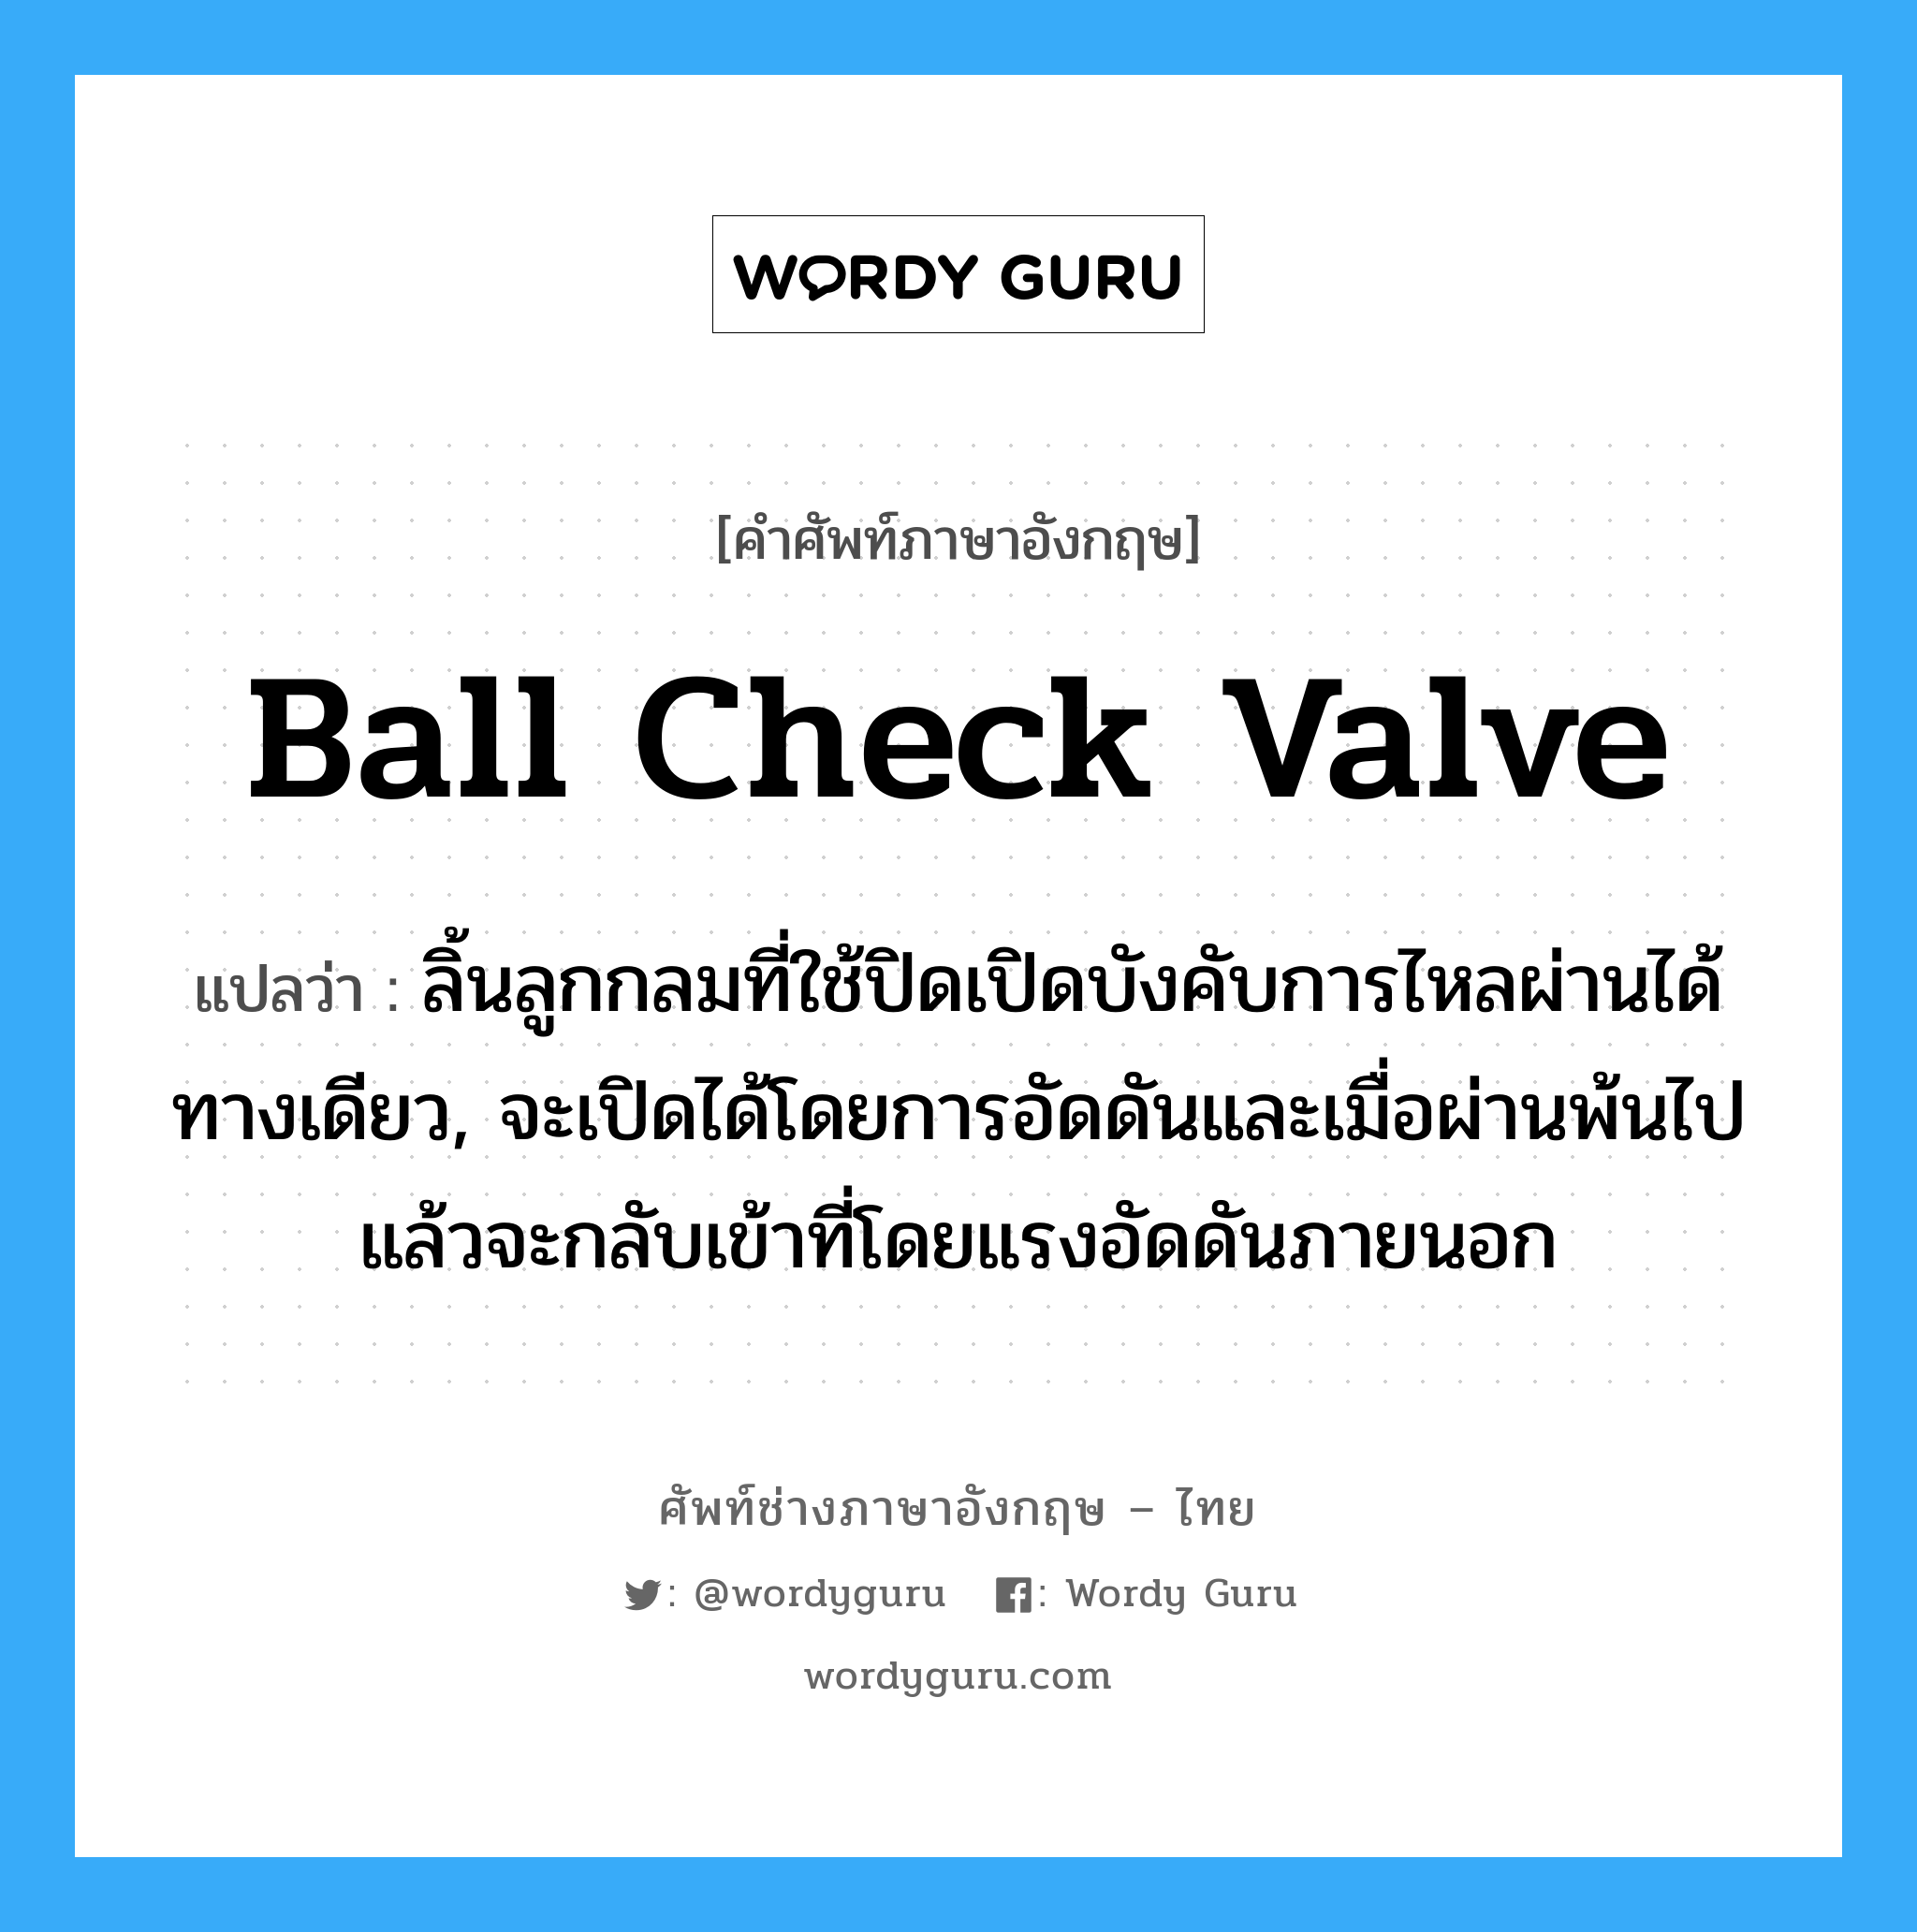 ball check valve แปลว่า?, คำศัพท์ช่างภาษาอังกฤษ - ไทย ball check valve คำศัพท์ภาษาอังกฤษ ball check valve แปลว่า ลิ้นลูกกลมที่ใช้ปิดเปิดบังคับการไหลผ่านได้ทางเดียว, จะเปิดได้โดยการอัดดันและเมื่อผ่านพ้นไปแล้วจะกลับเข้าที่โดยแรงอัดดันภายนอก